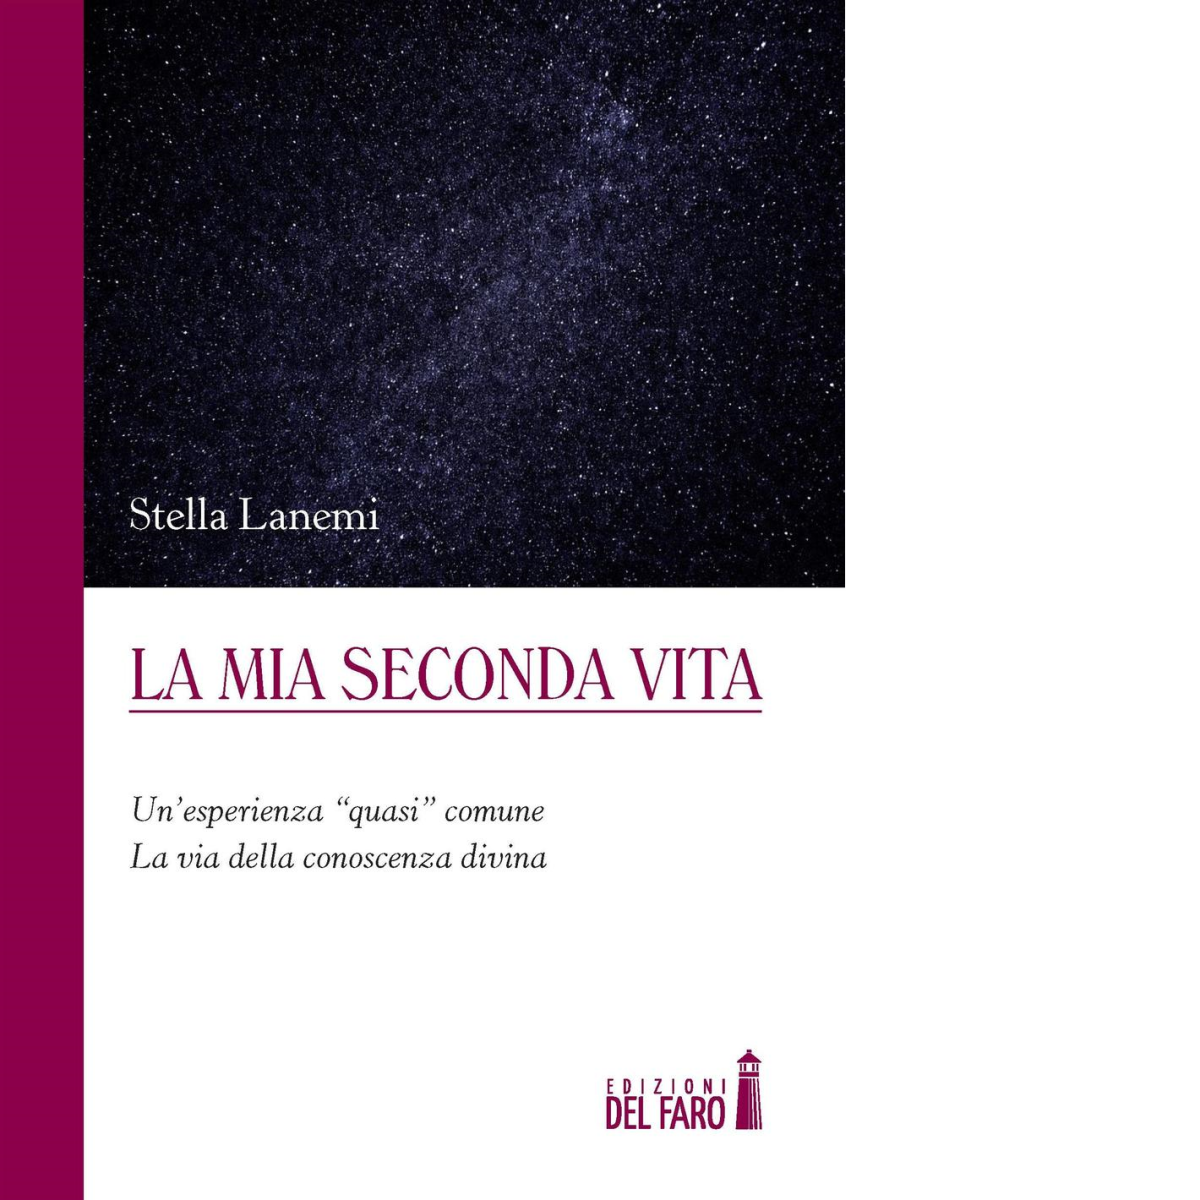 La mia seconda vita - Stella Lanemi - Edizioni Del faro, 2016